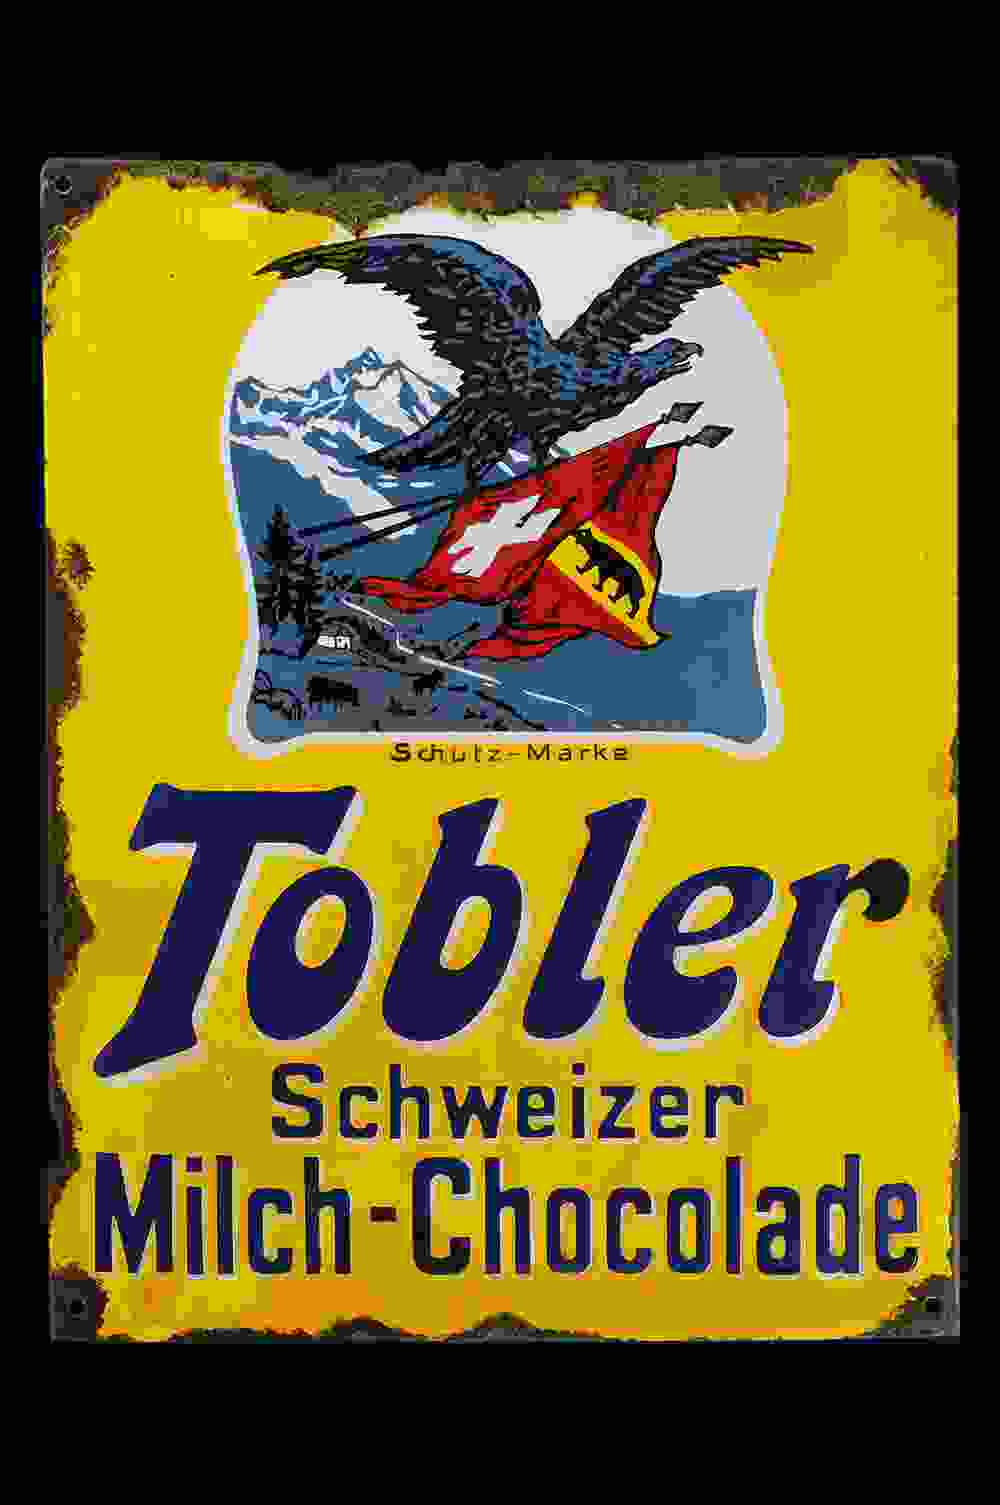 Tobler Schweizer Schokolade 